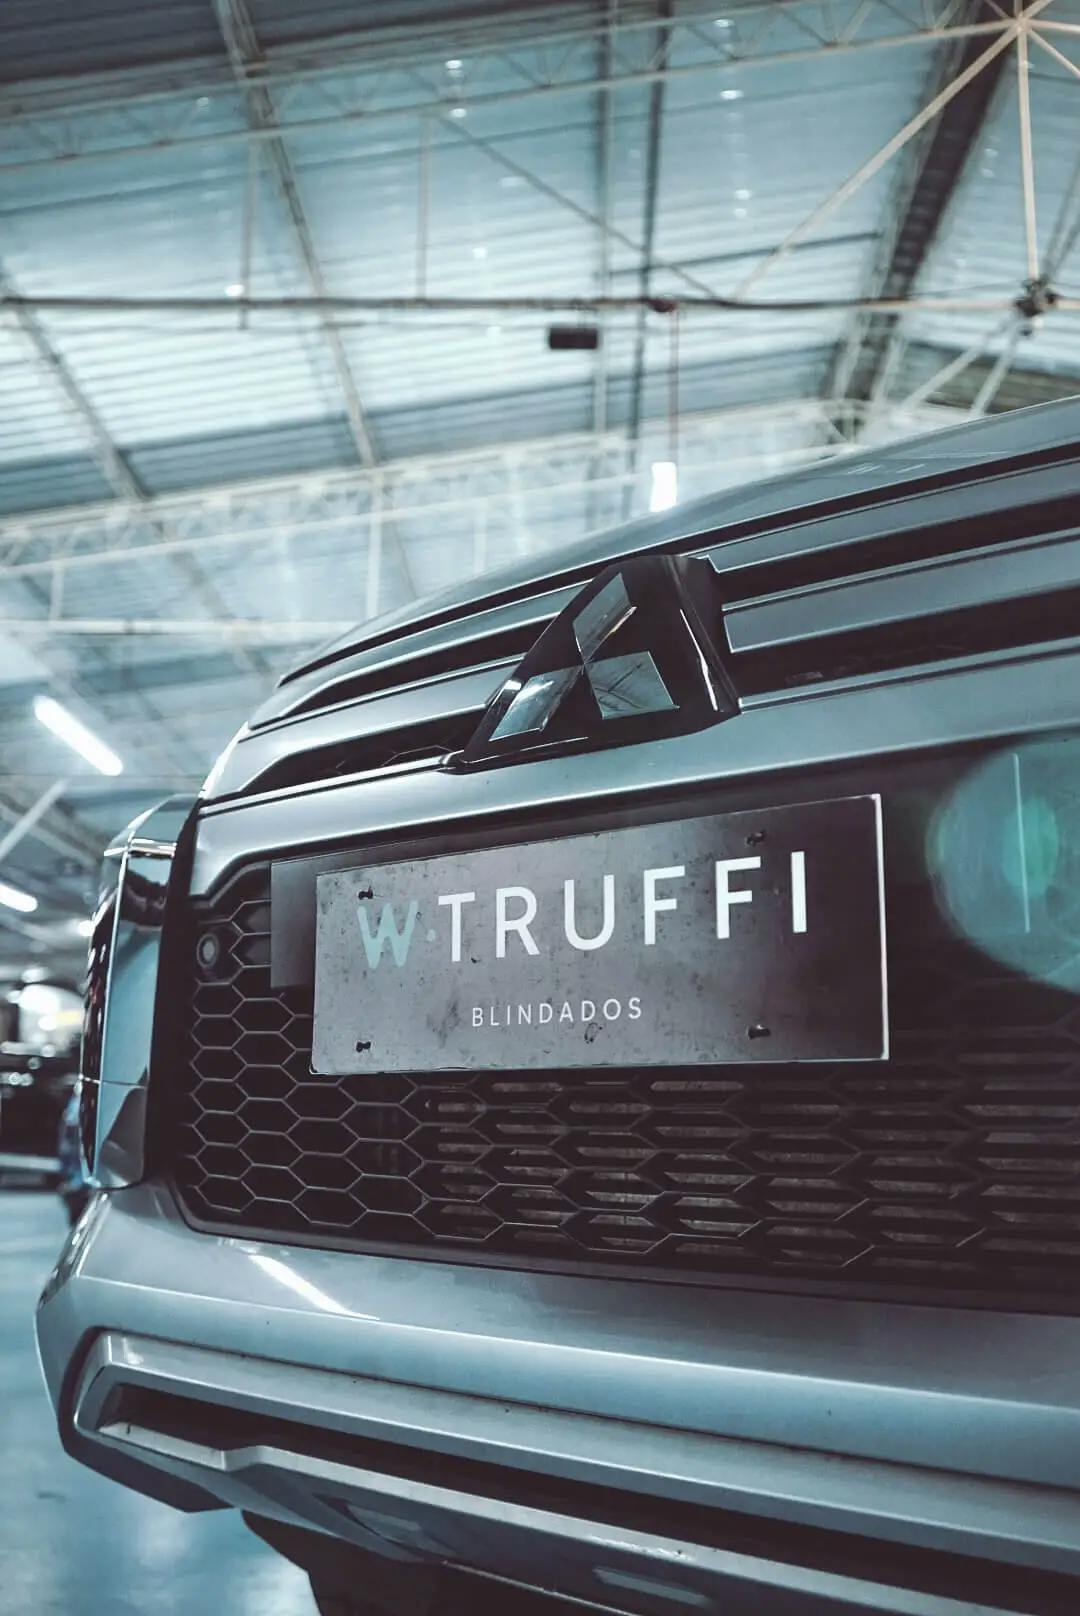 Foto de perto de um carro da Mitsubishi com uma placa da W. Truffi blindados